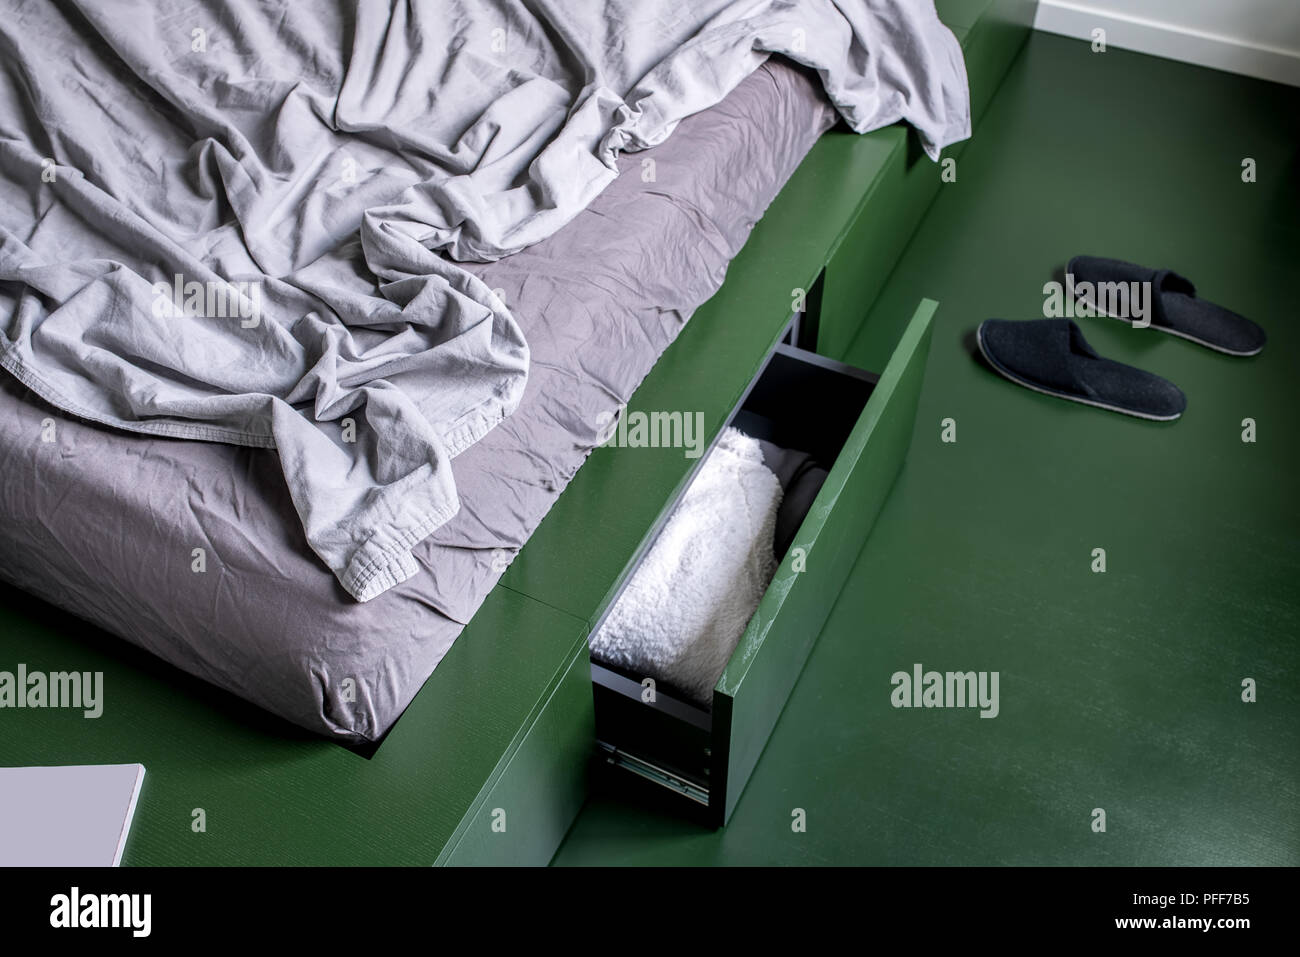 Stilvolle Zimmer in einem modernen Stil mit weißen Wänden und grünen Boden. Es ist ein grünes Bett mit Schubladen und pastellfarbene Bettwäsche, schwarz Hausschuhe auf dem Boden. C Stockfoto